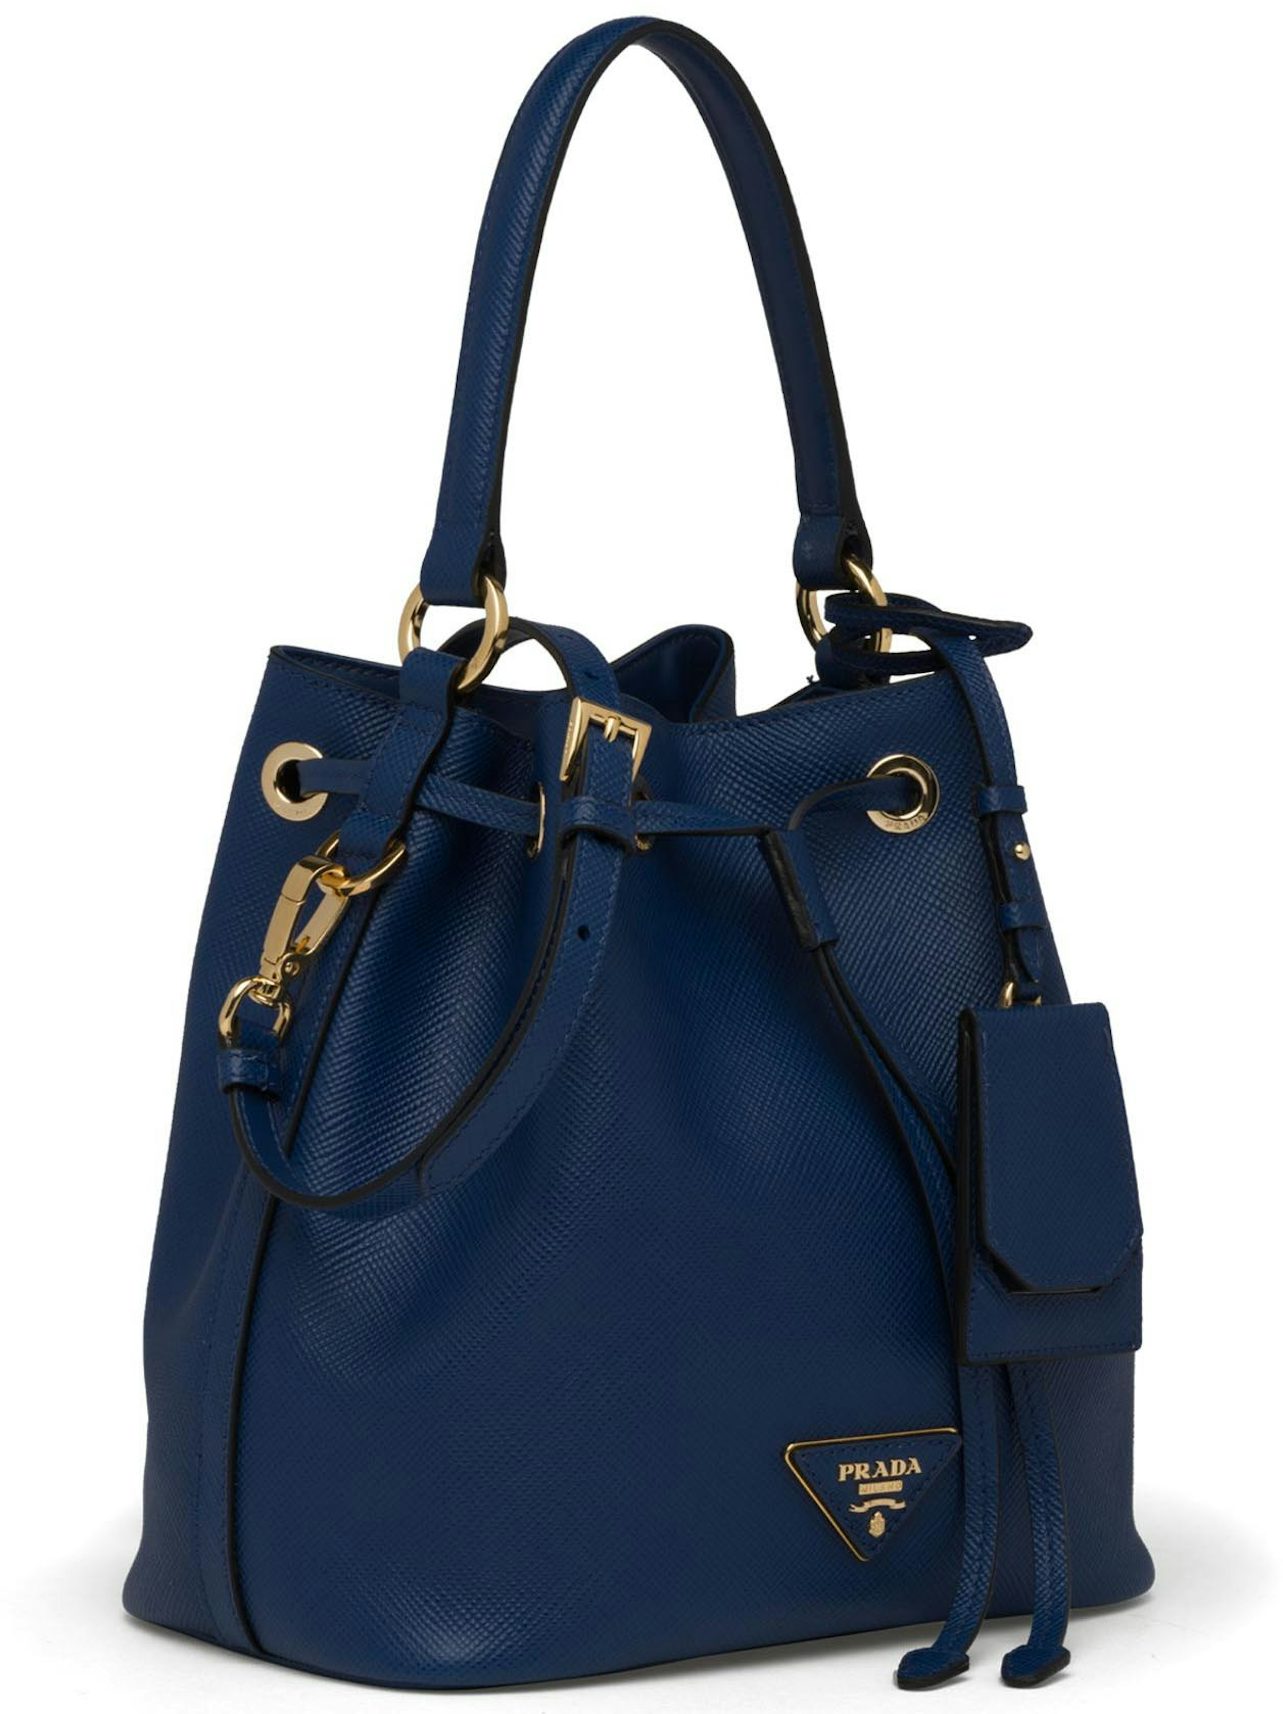 Prada Saffiano Galleria Bag Small Cerise in Saffiano Leather with